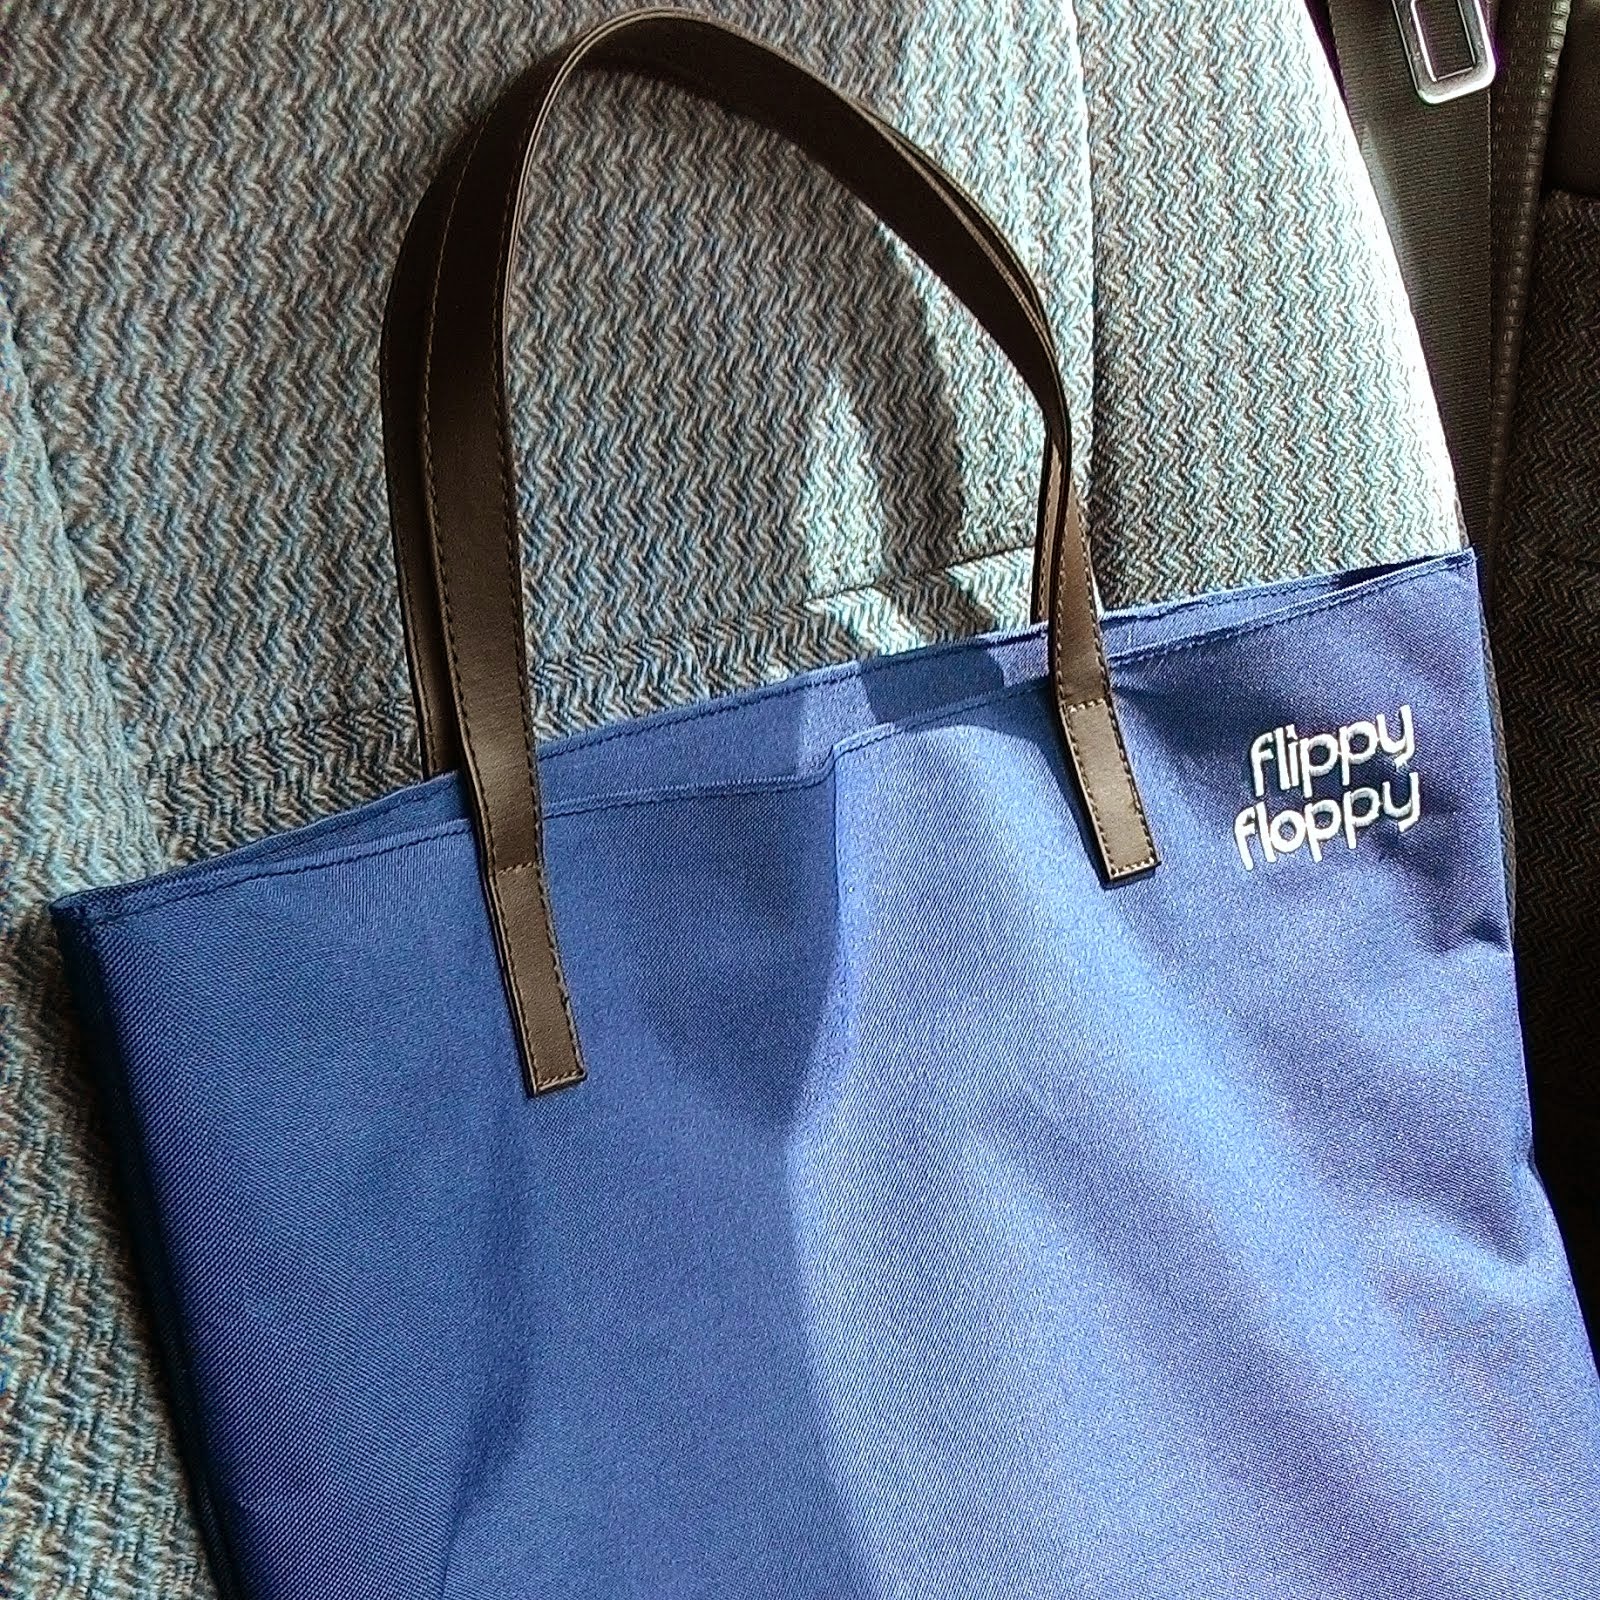 lundiaschool - stationery and school stuff blog: flippy floppy tote bag